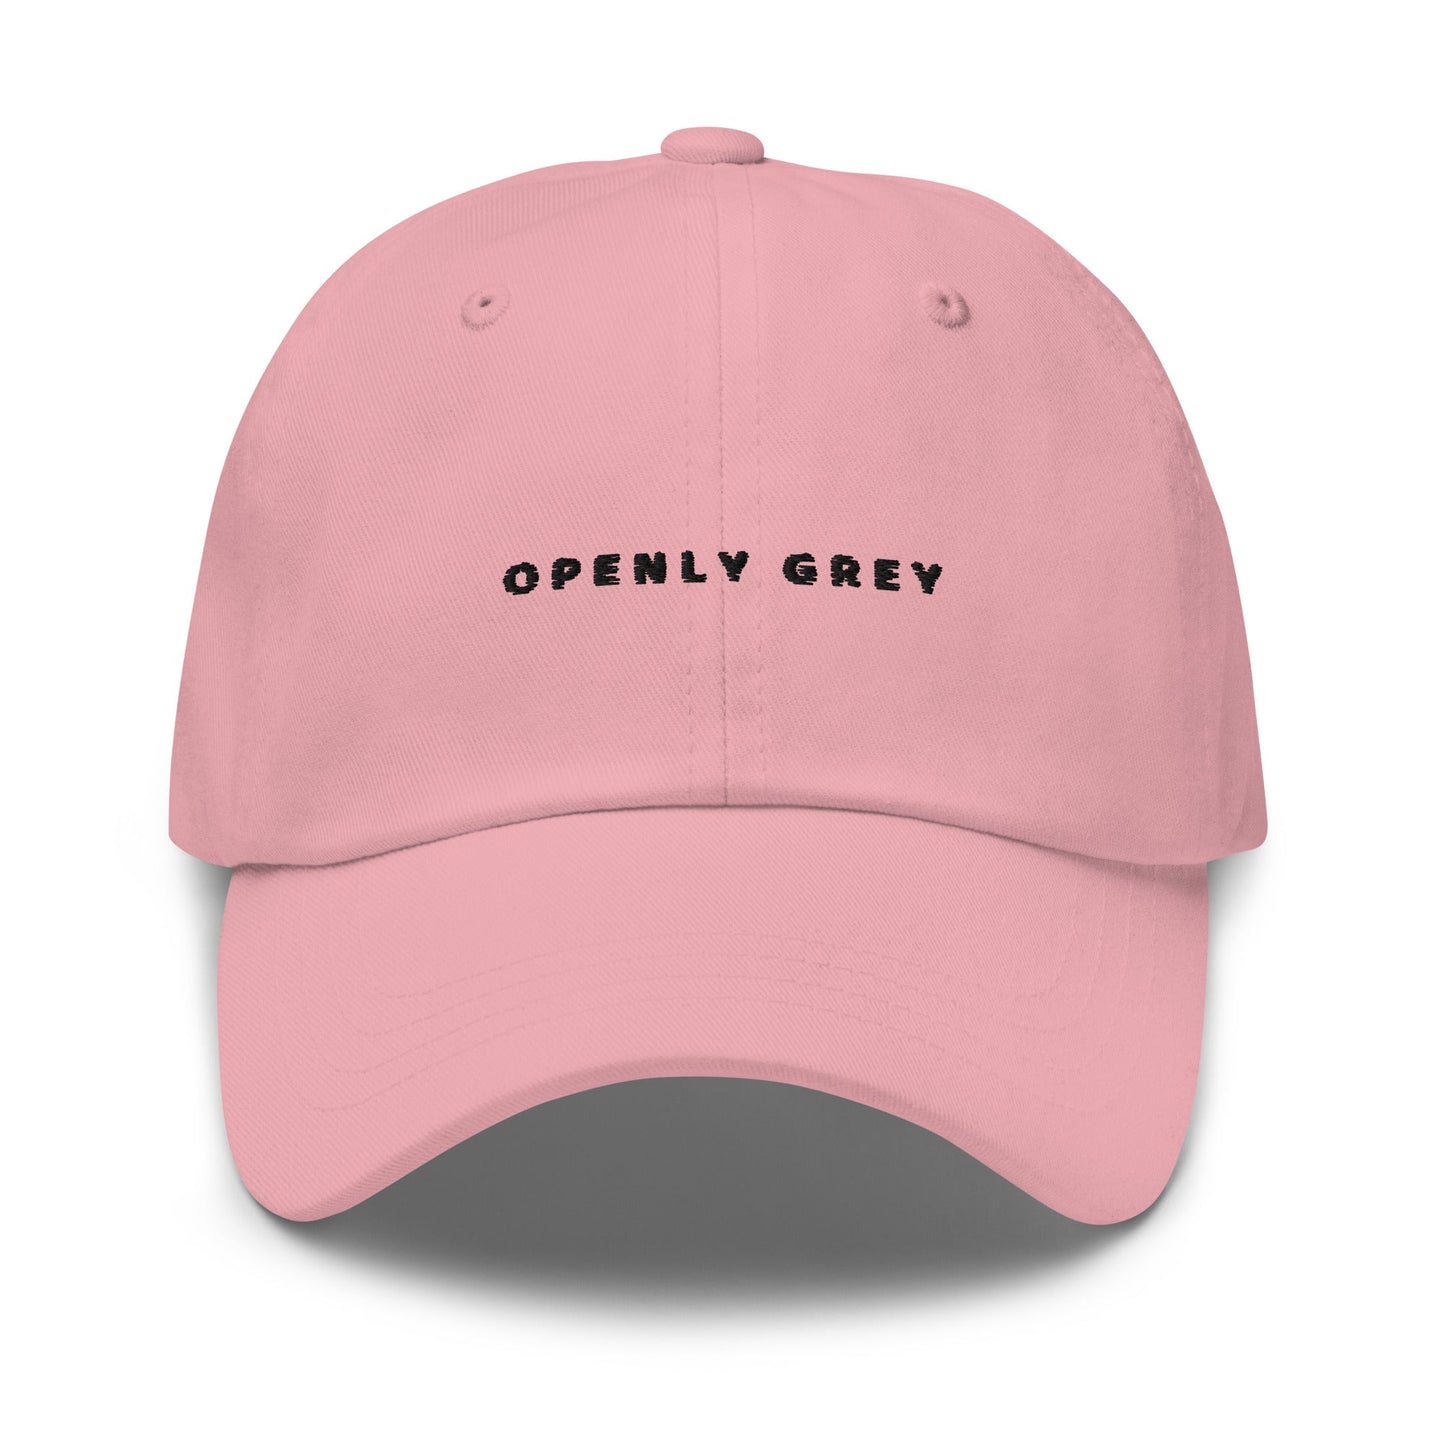 Openly Grey Hat | Art in Aging